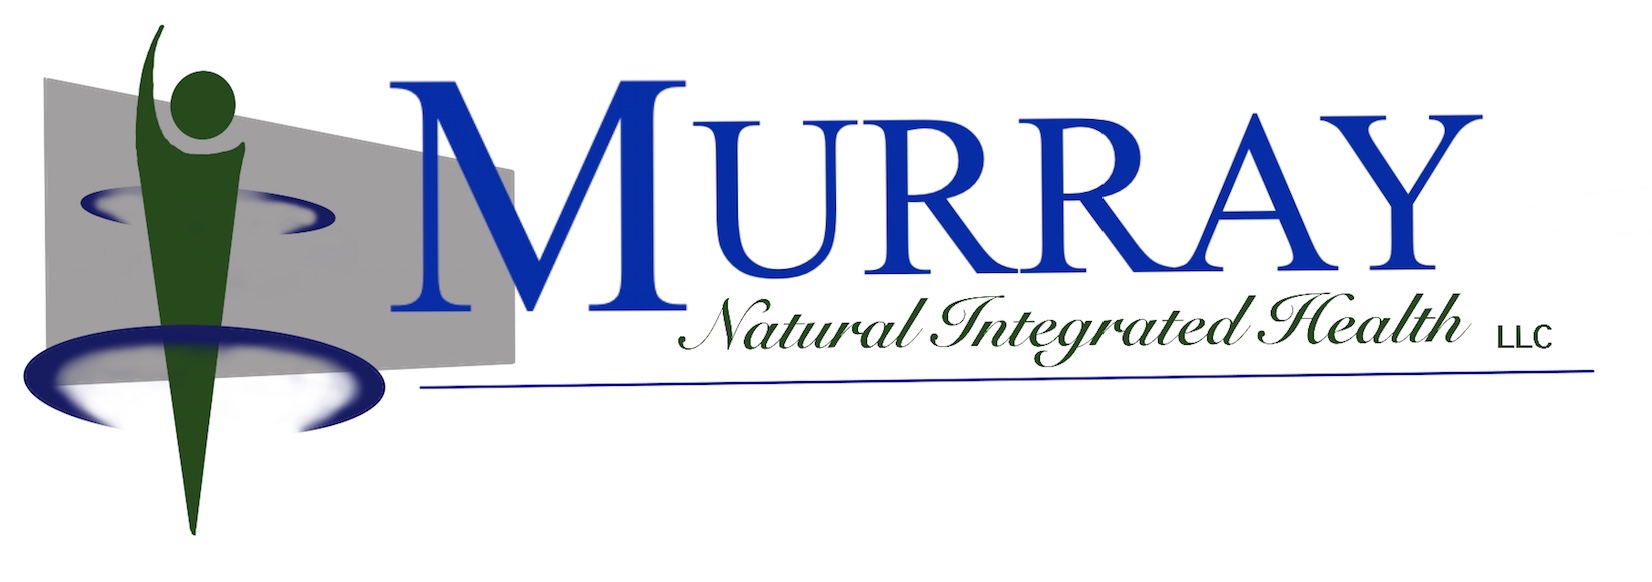 Murray Natural Health